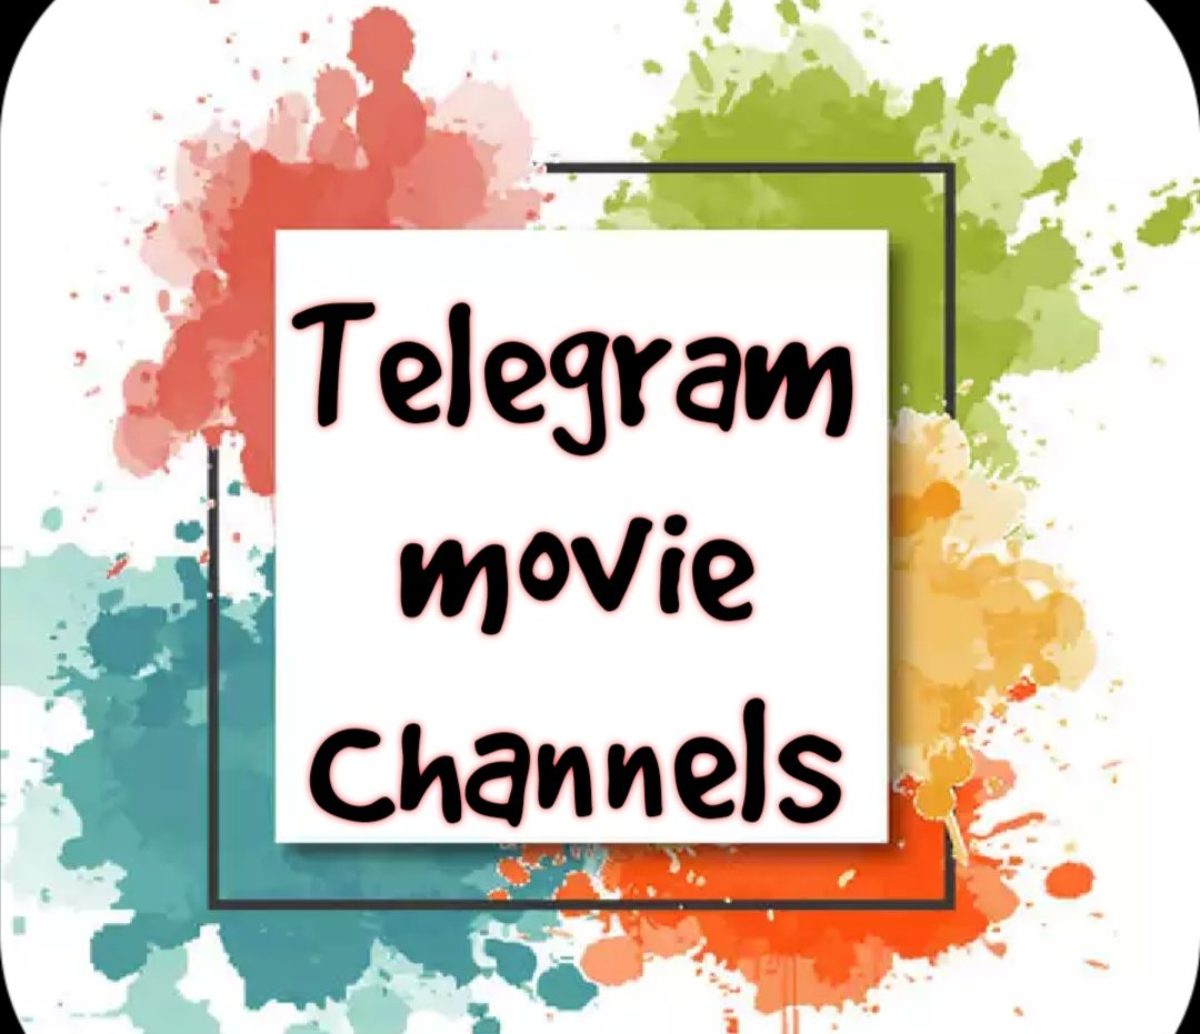 Movie melayu telegram link